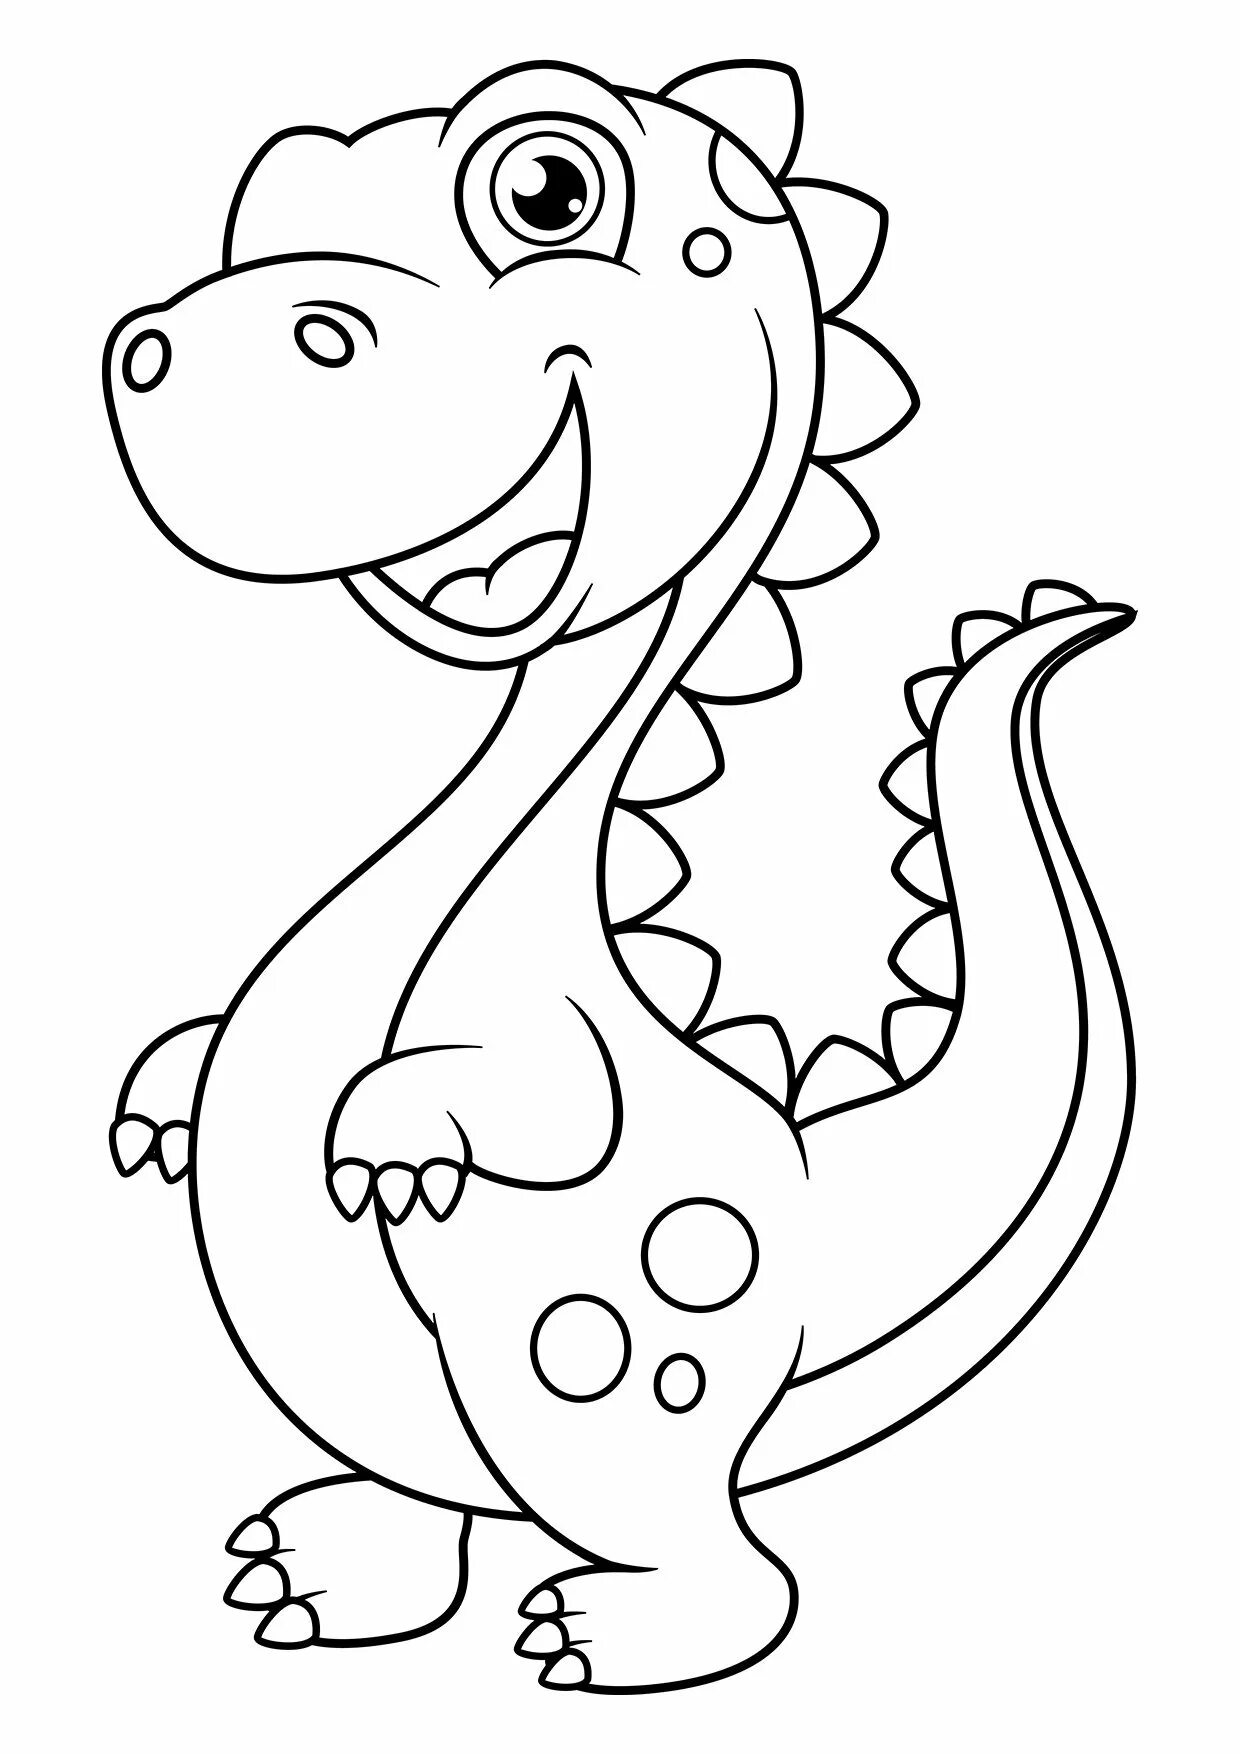 Раскраска динозавр формат а4. Динозавр раскраска для детей. Динозаврик раскраска для детей. Динозавры / раскраска. Раскраска Динозаврики для малышей.